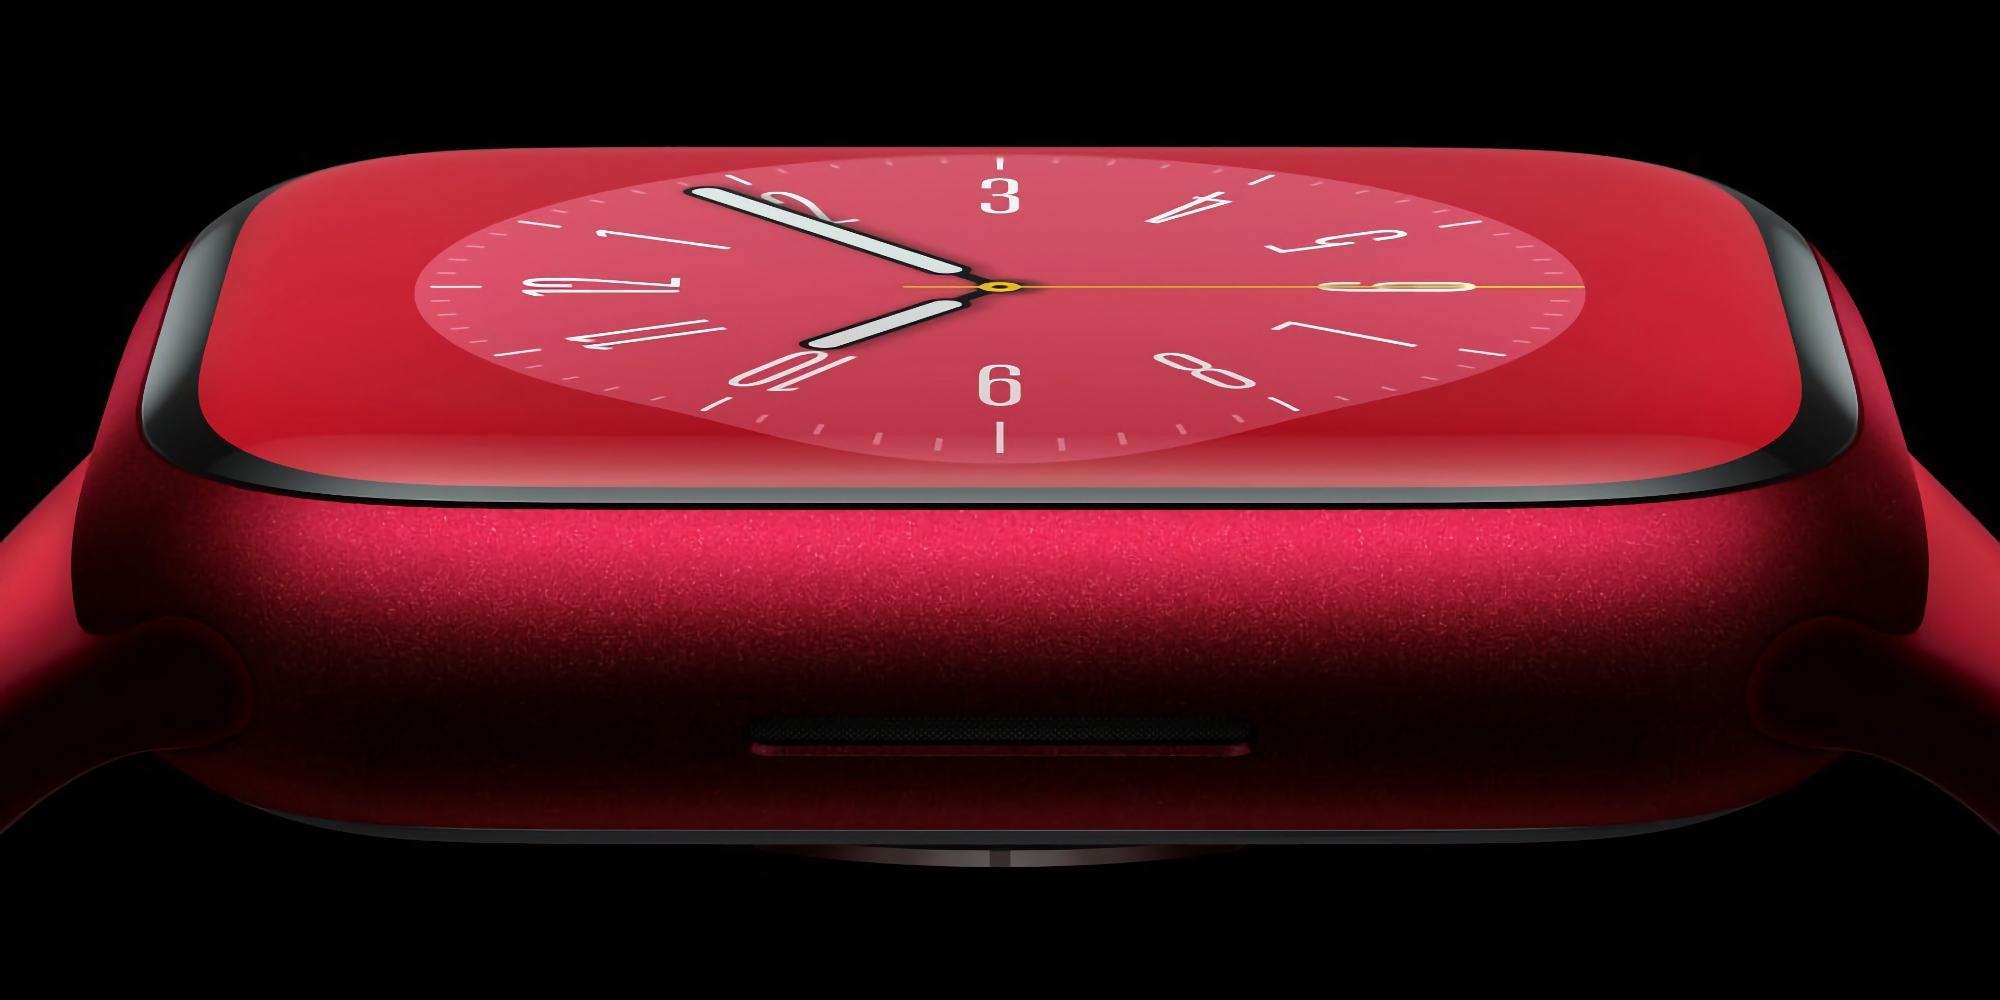 Bloomberg: Apple planea cambiar a paneles microLED personalizados en 2024, la primera pantalla de este tipo tendrá Apple Watch